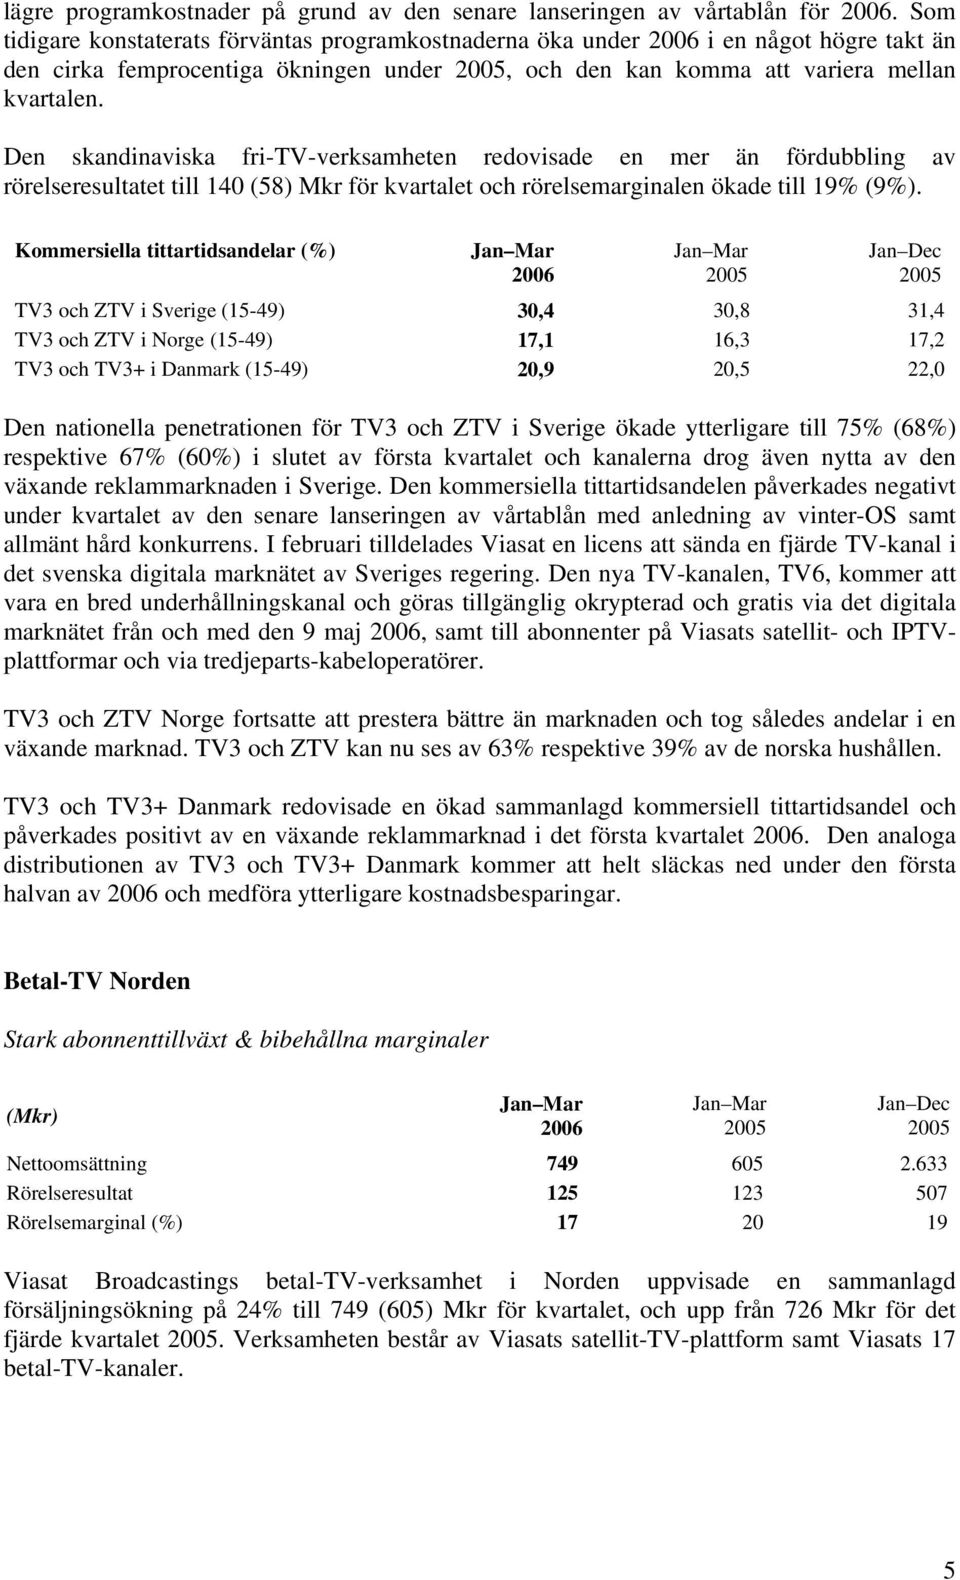 Den skandinaviska fri-tv-verksamheten redovisade en mer än fördubbling av rörelseresultatet till 140 (58) Mkr för kvartalet och rörelsemarginalen ökade till 19% (9%).